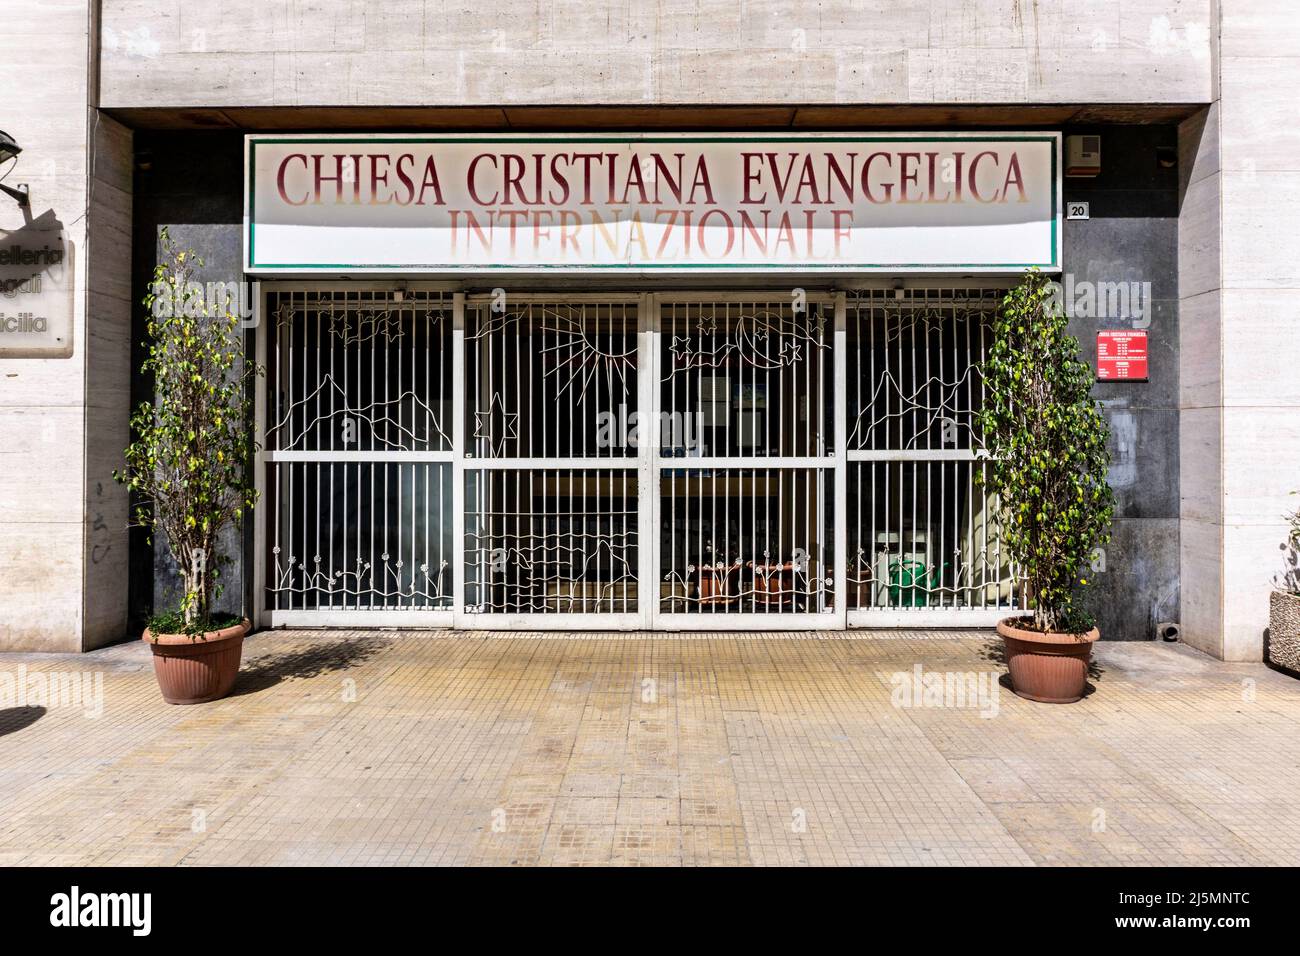 Eine internationale evangelisch-christliche Kirche in Palermo, Sizilien, Italien. Stockfoto